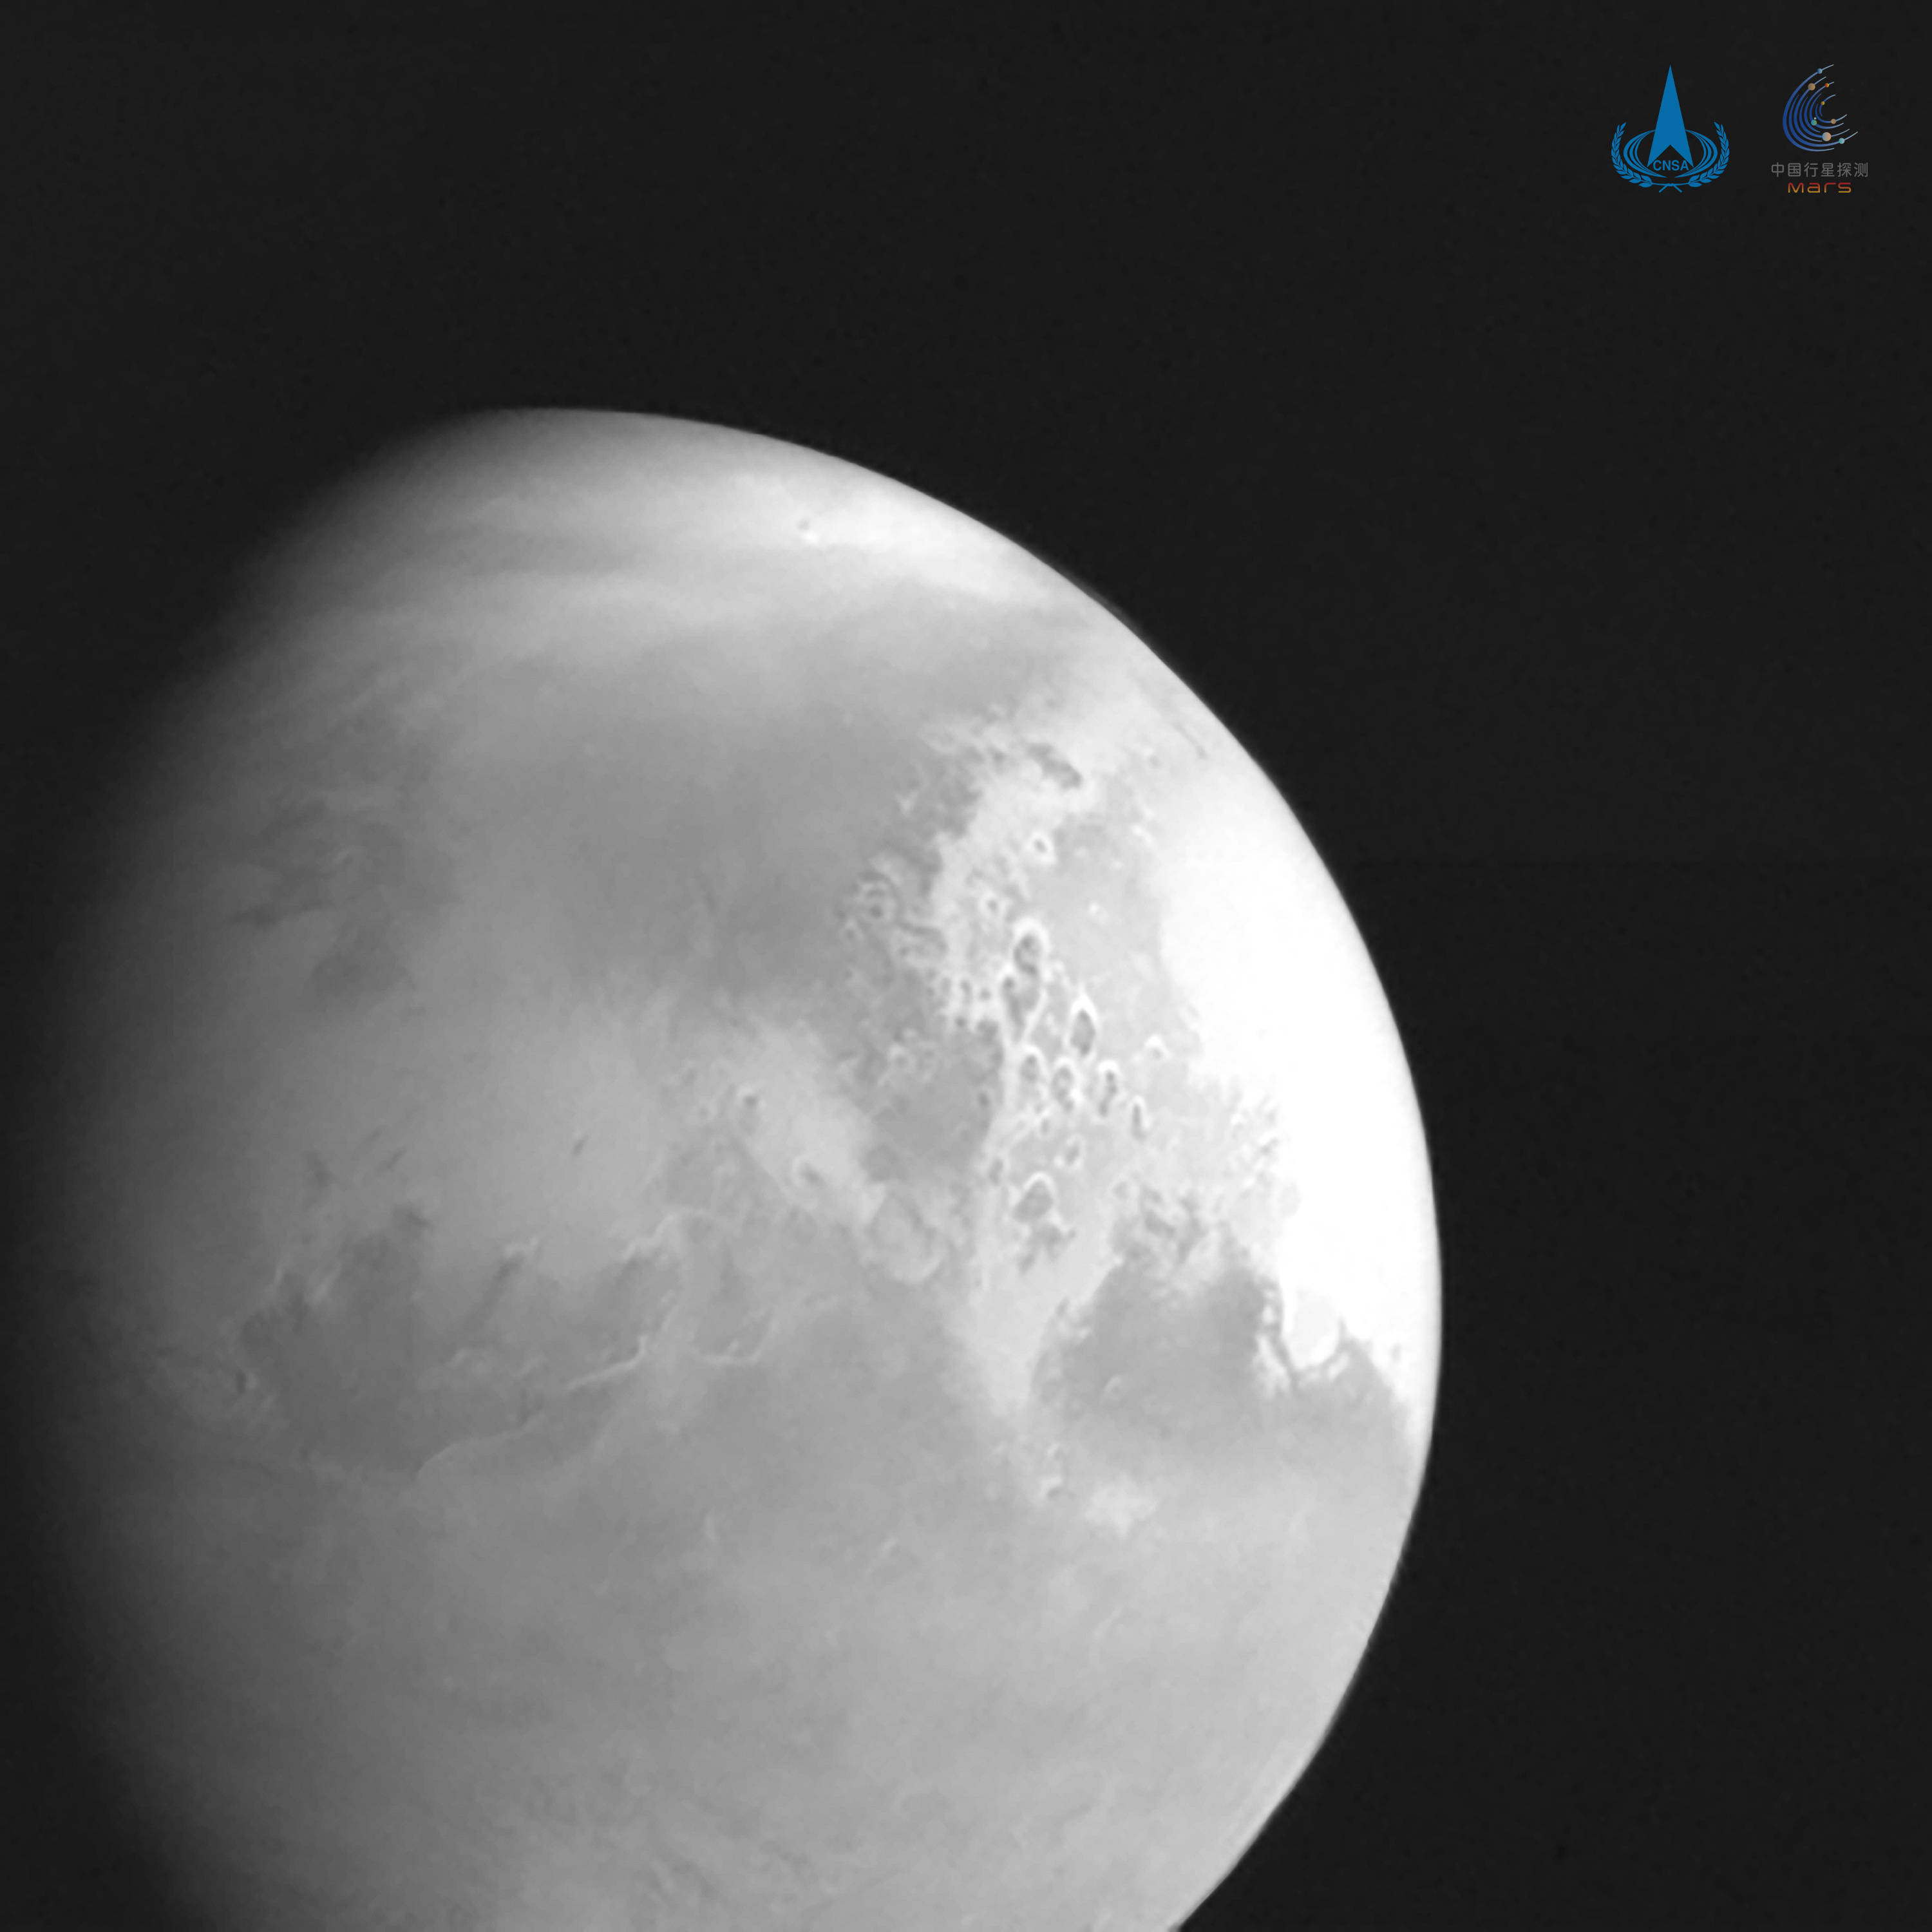 微信|天问一号传回首幅火星图像